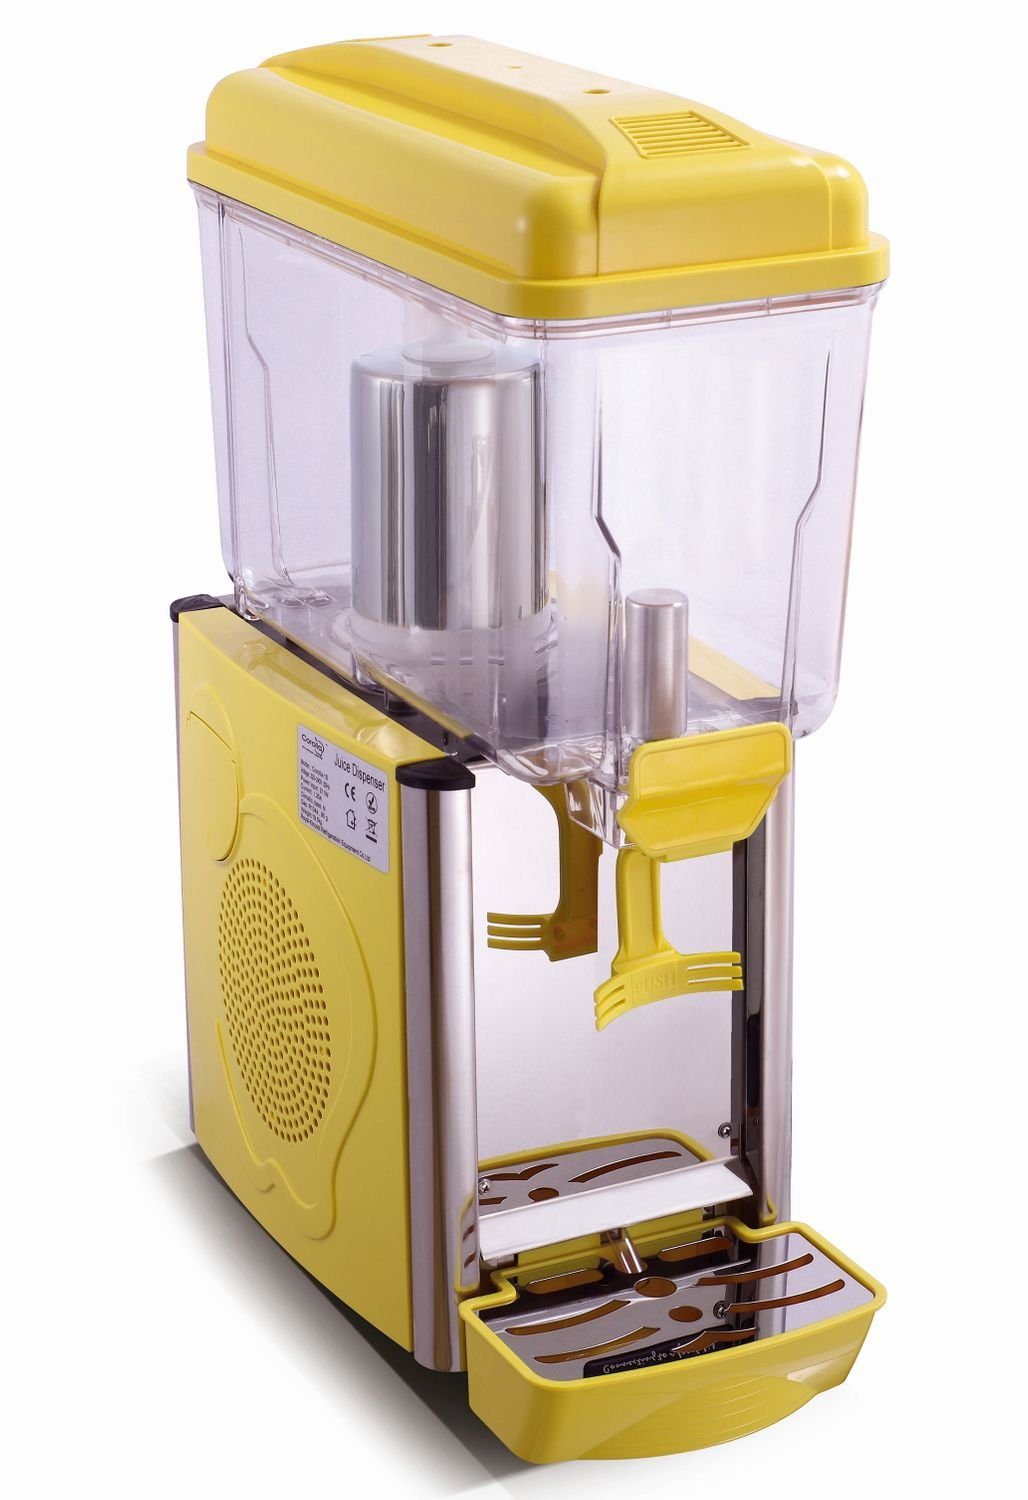 Saro Einkochautomat Getränkespender mit Kühlung, Saftspender, Kaltgetränke Dispenser, 1G gelb